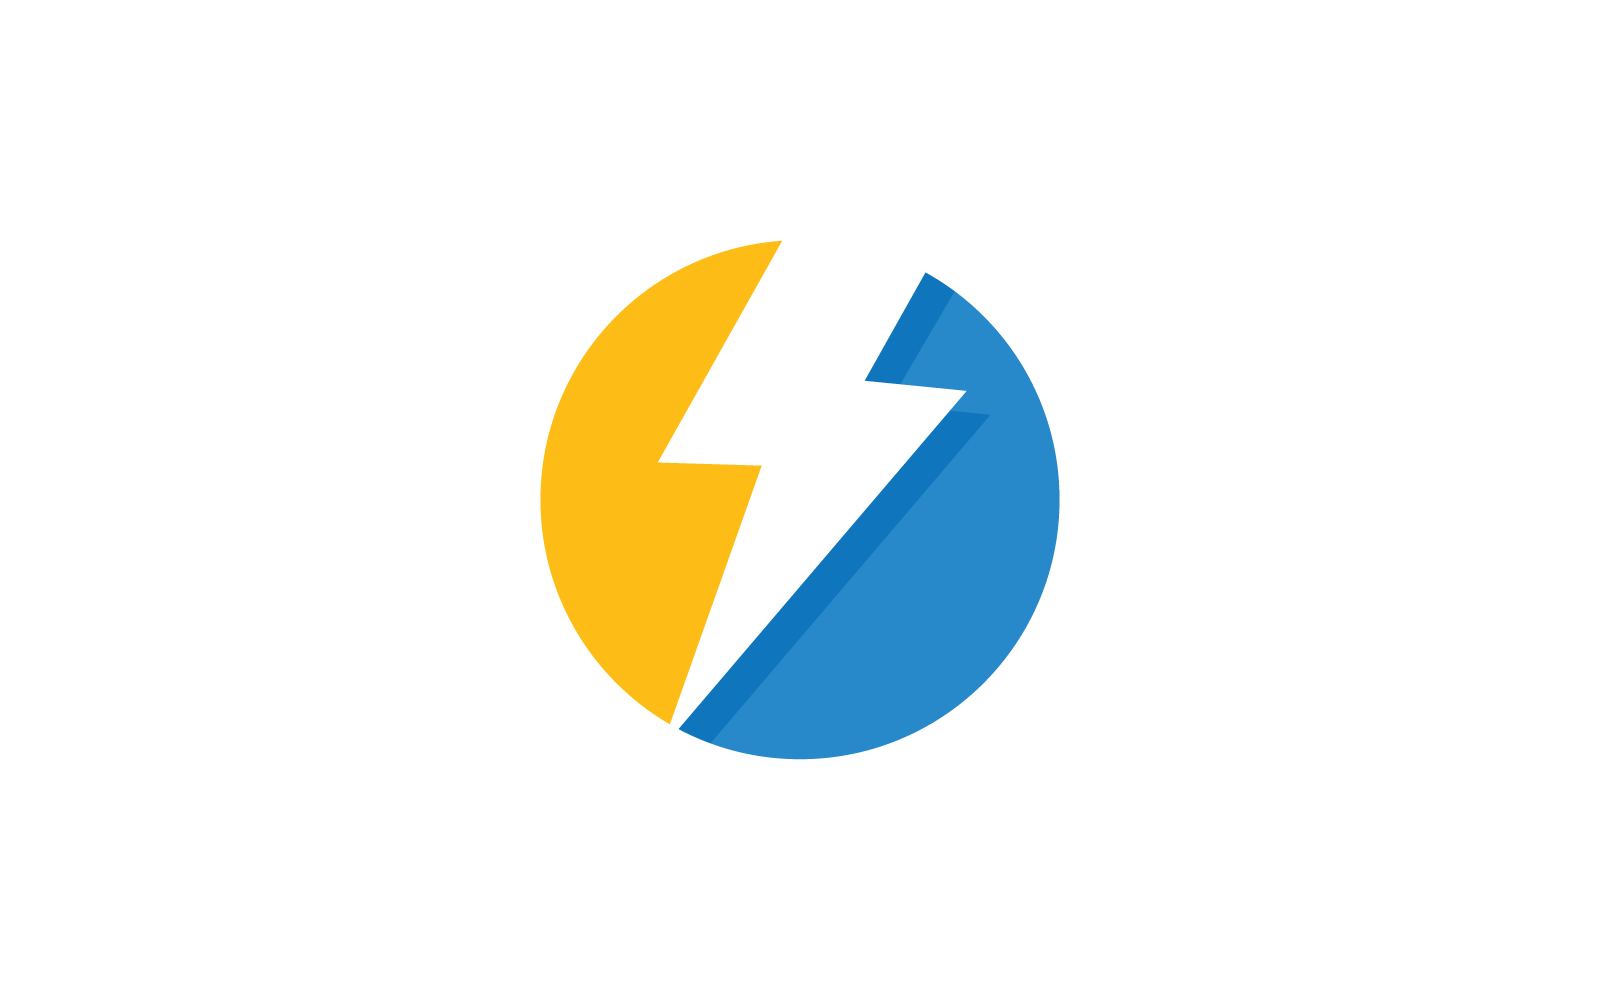 Power lightning power energy vector logo template